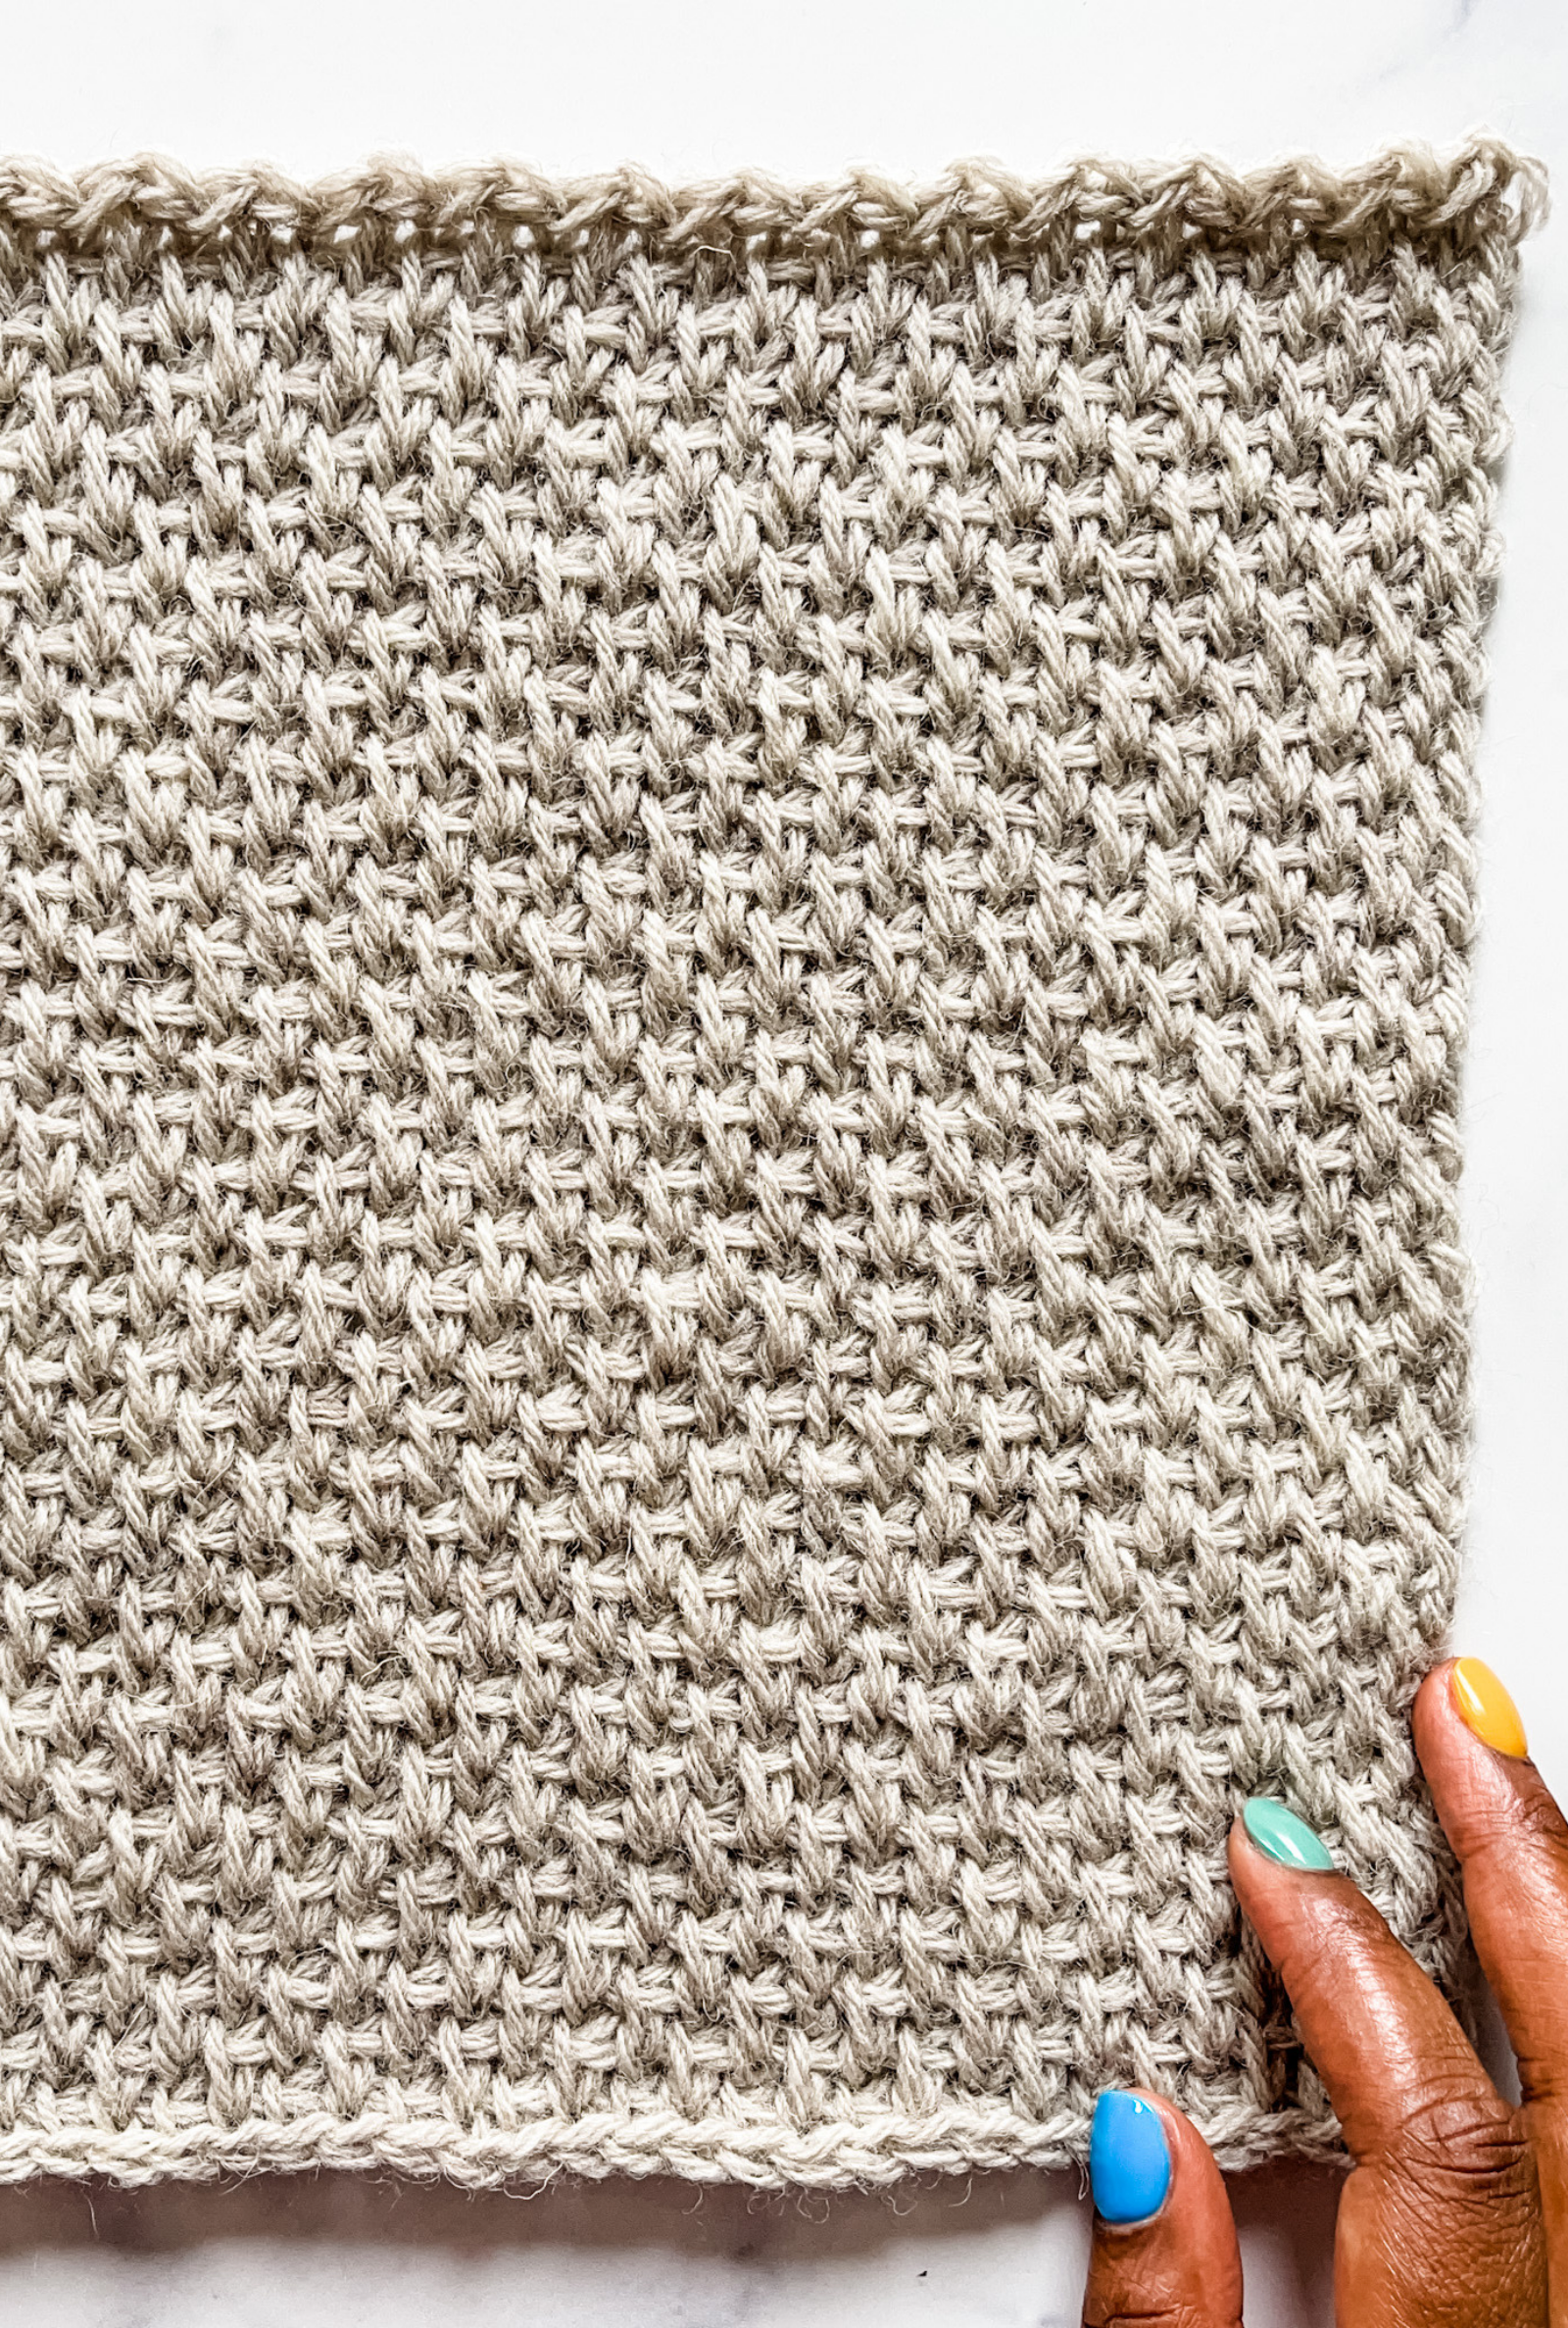 Crochet Chill Square - Tunisian Blanket CAL 2021